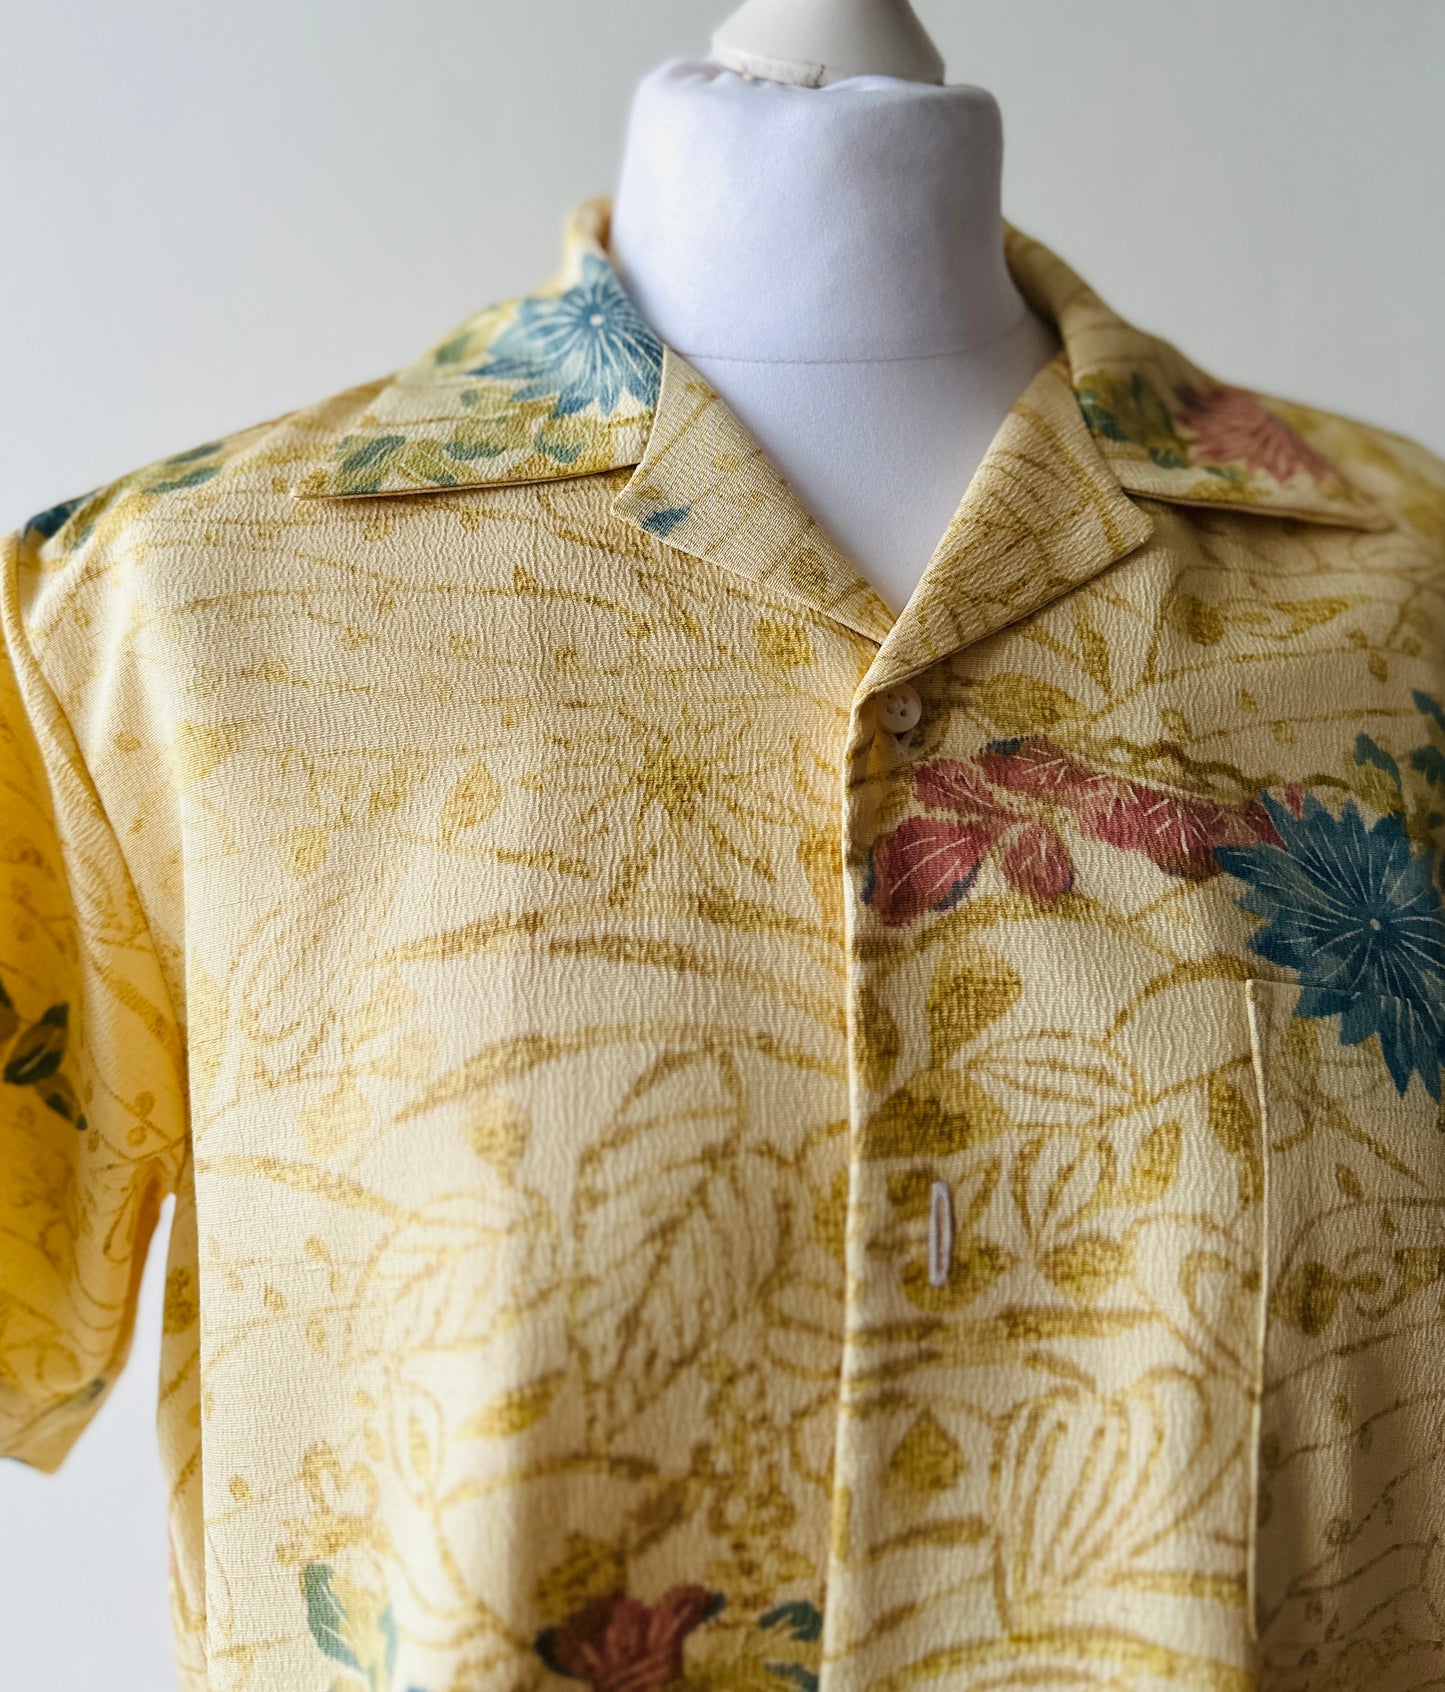 【Beige, bloeiende landschap】 Hawaiiaans shirt/maat: s ＜ nieuw ・ zijde ＞ voor mannen, voor vrouwen, voor kinderen, Japanse kimono, Japan unisexese kleding, unisex, Japanse geschenken, origineel item